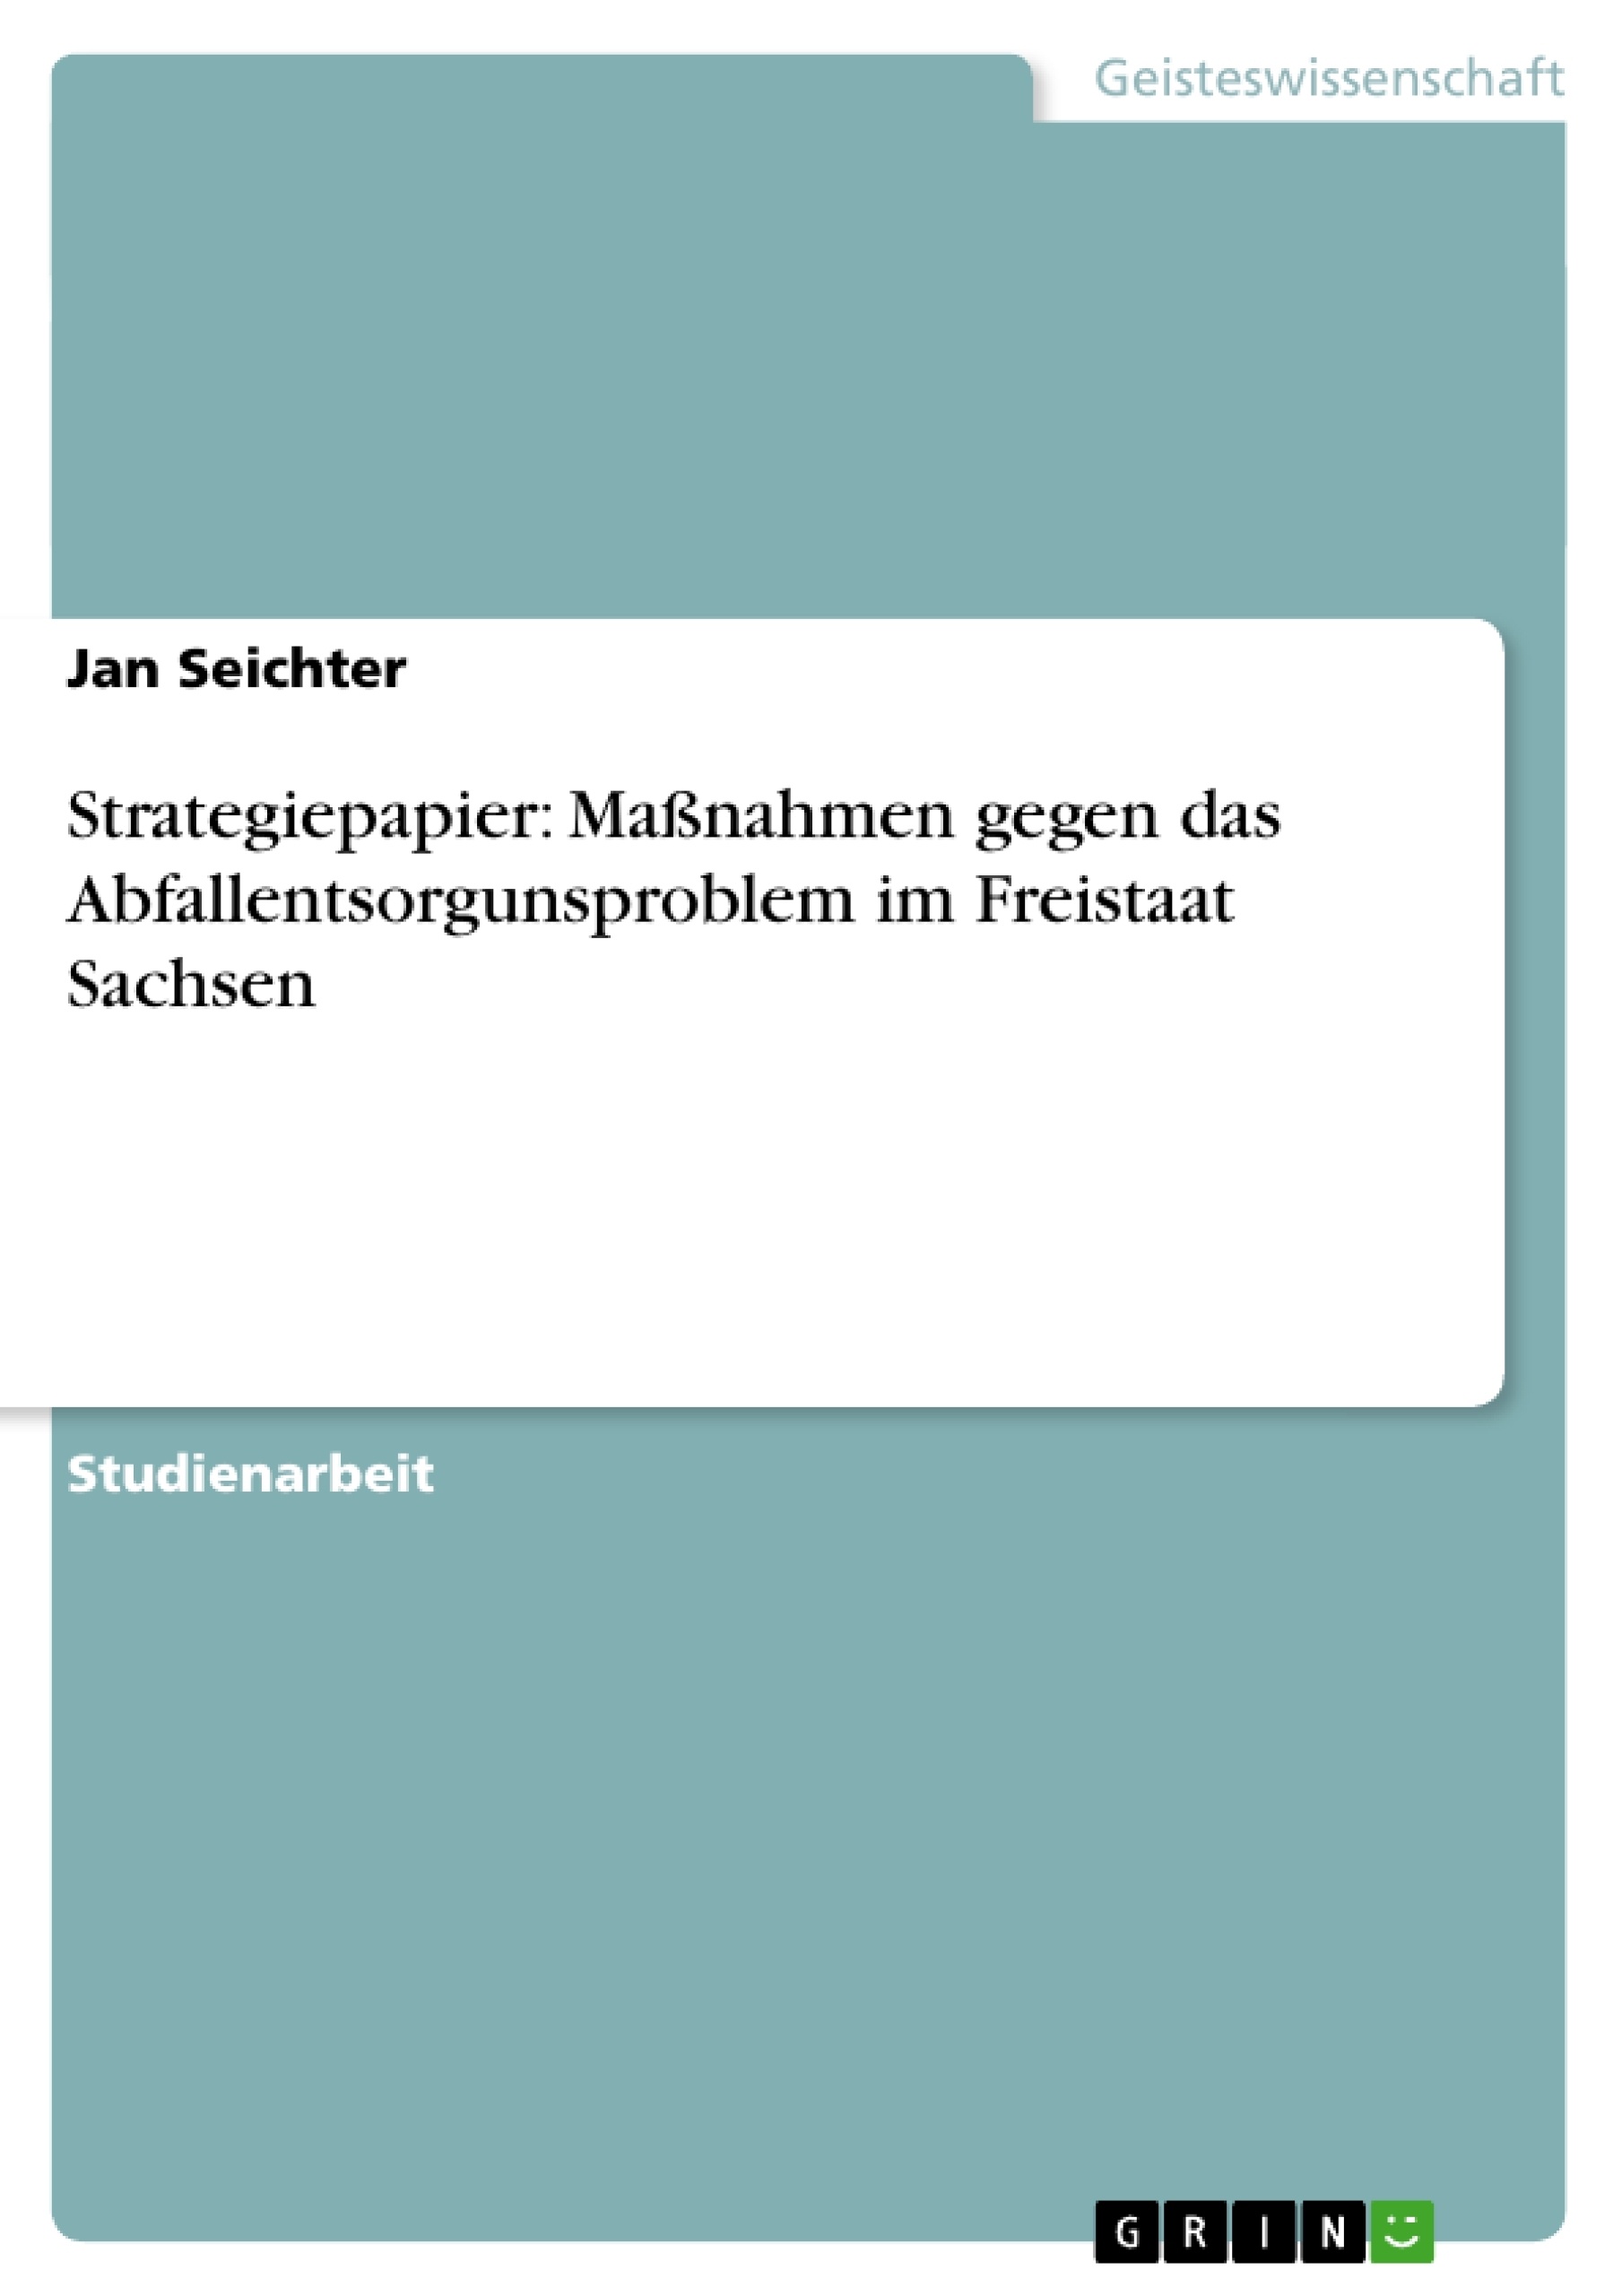 Titre: Strategiepapier: Maßnahmen gegen das Abfallentsorgunsproblem im Freistaat Sachsen